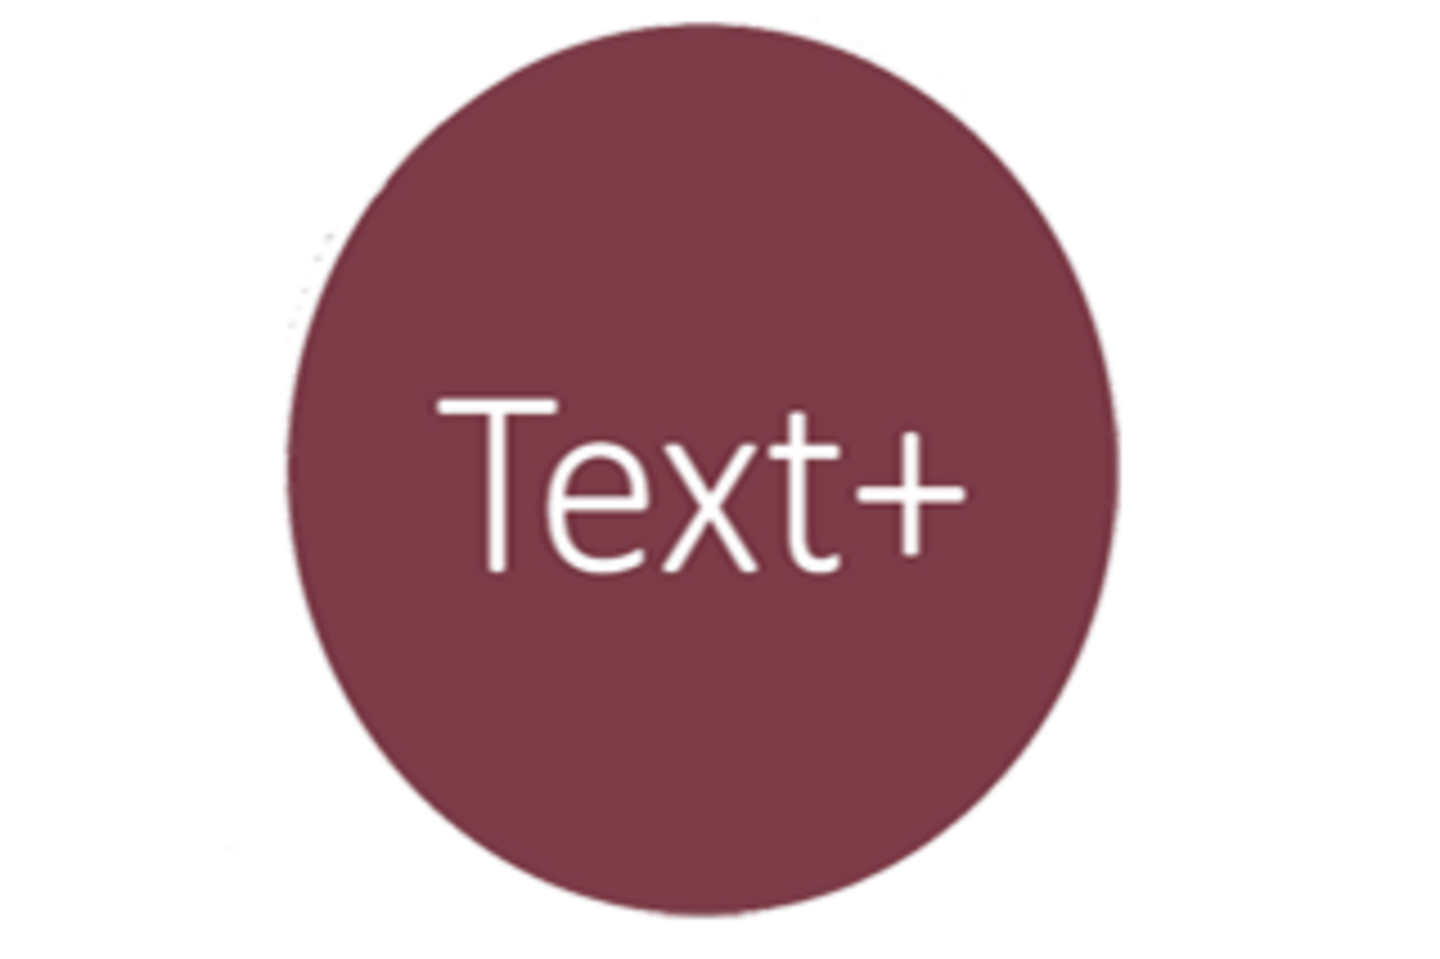 Das runde, dunkelrote Logo von Text+.